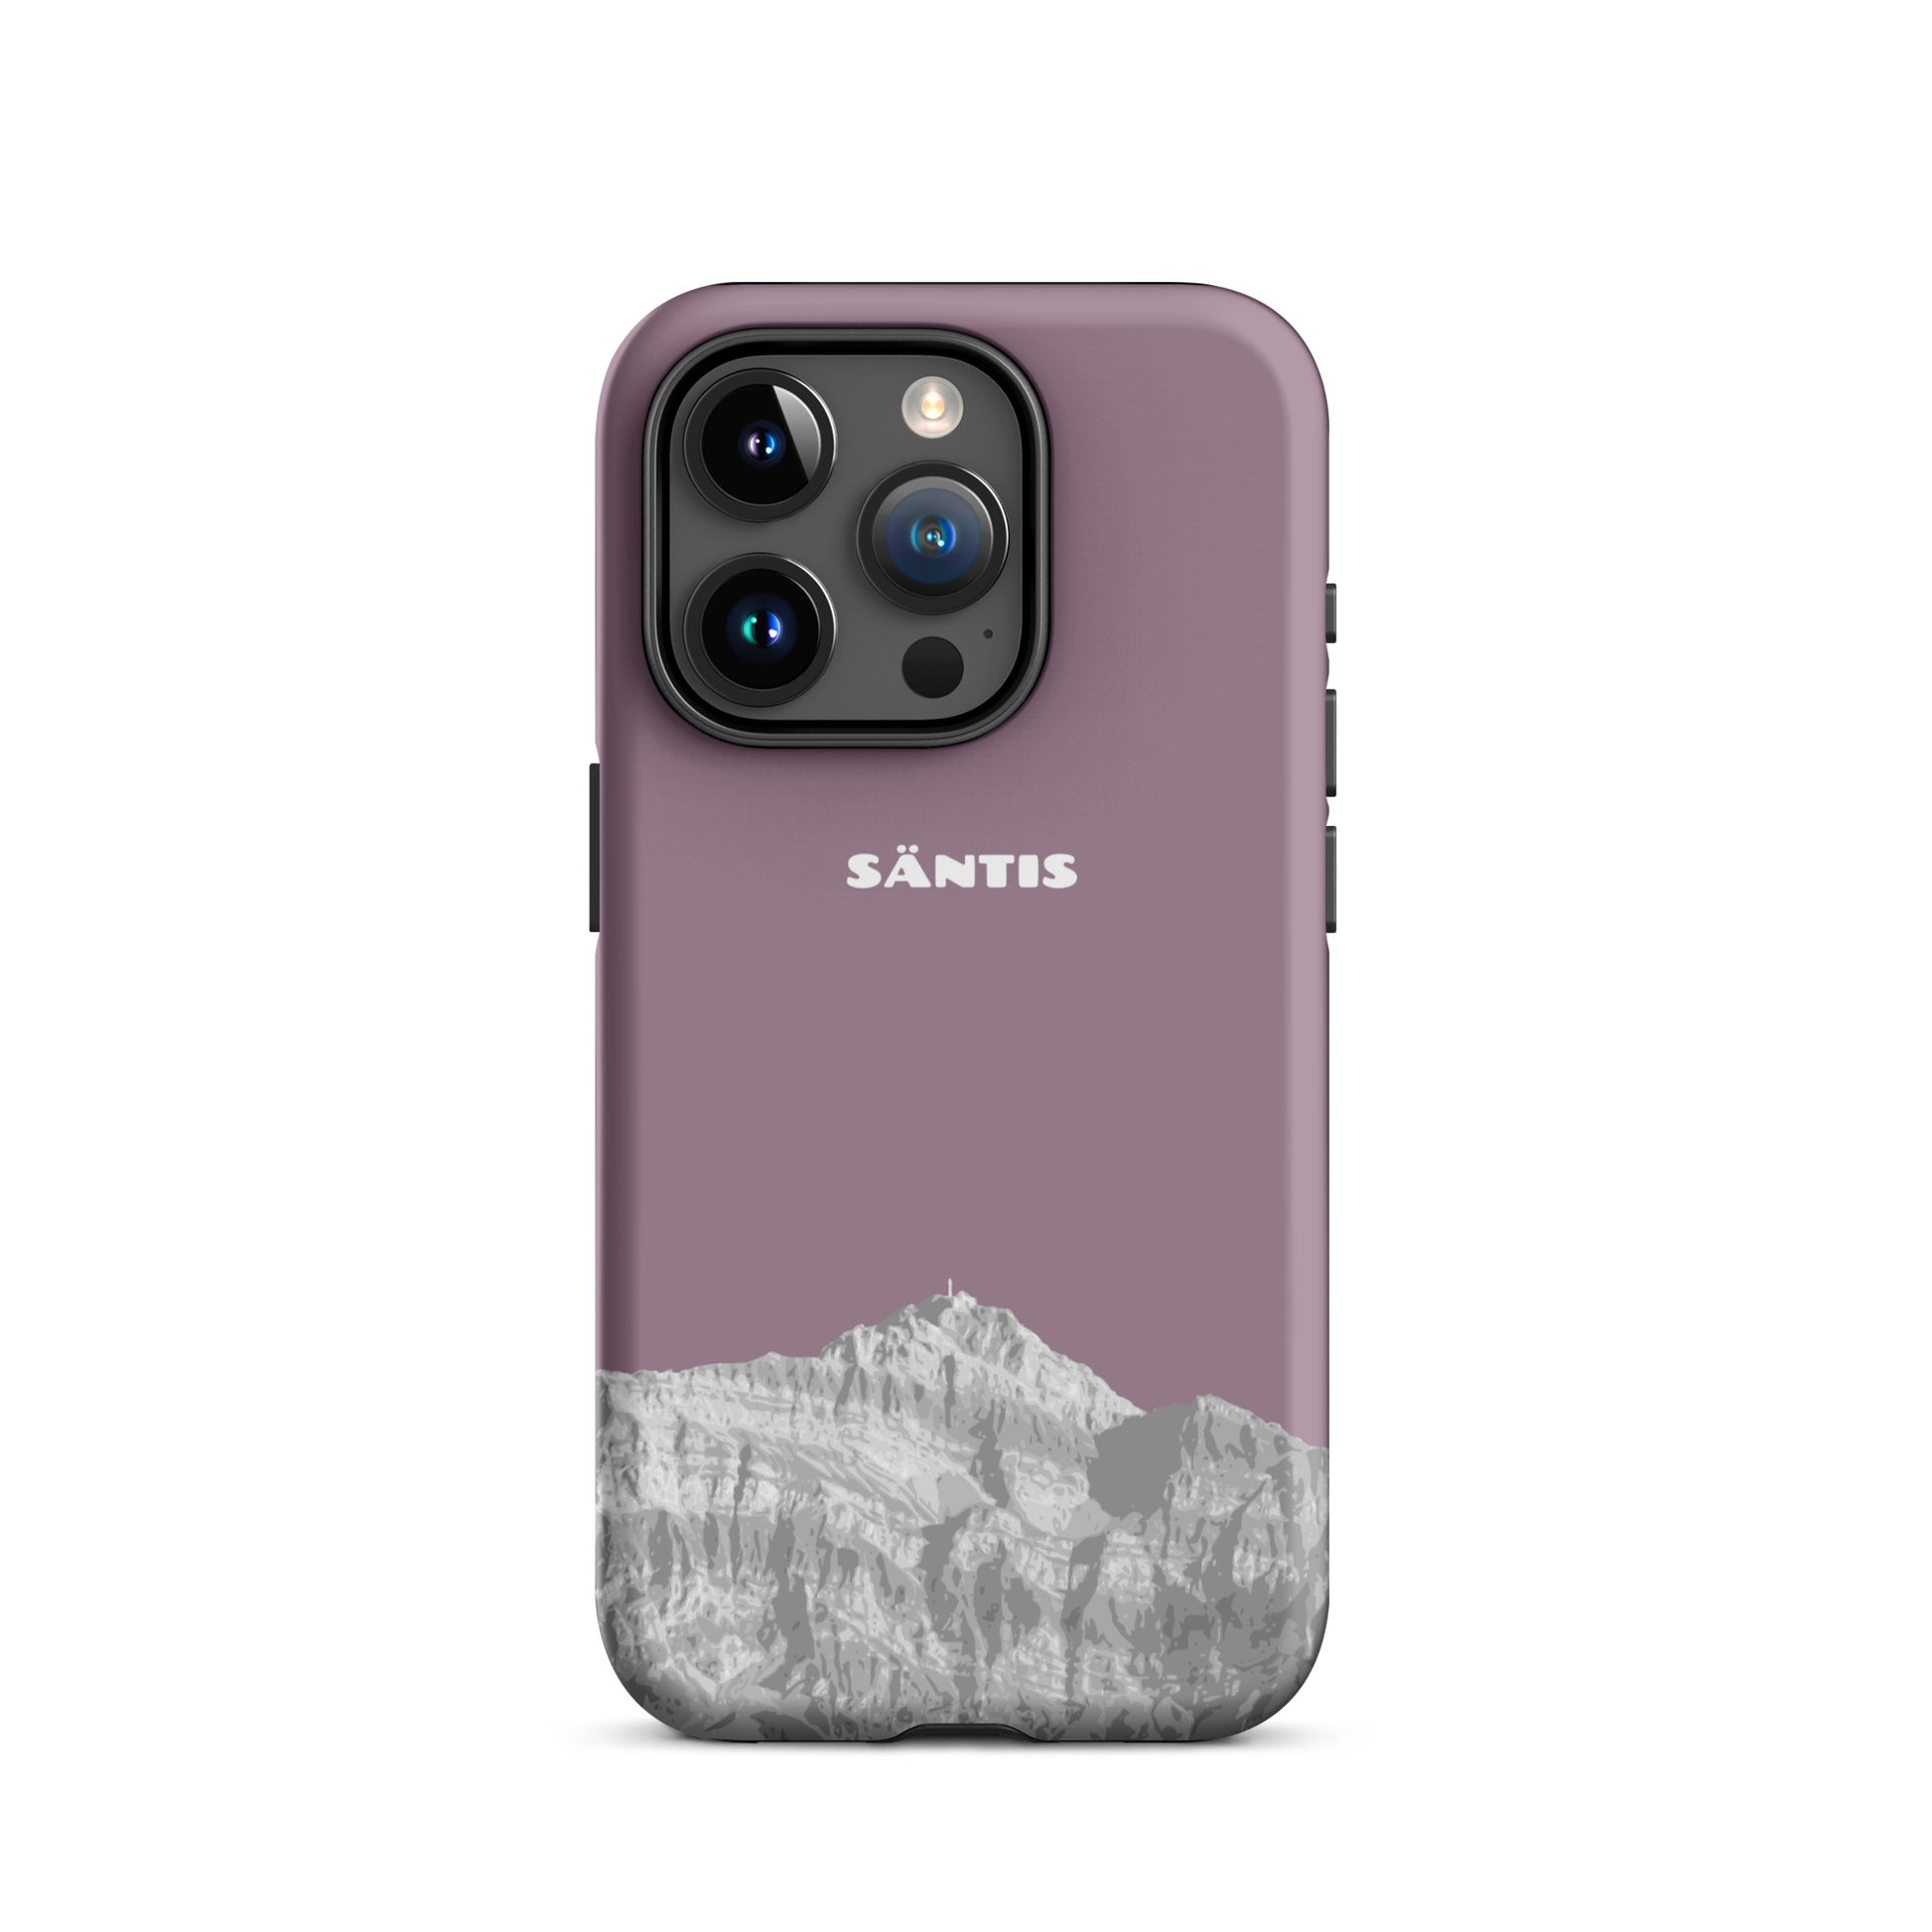 Hülle für das iPhone 15 Pro von Apple in der Farbe Pastellviolett, dass den Säntis im Alpstein zeigt.